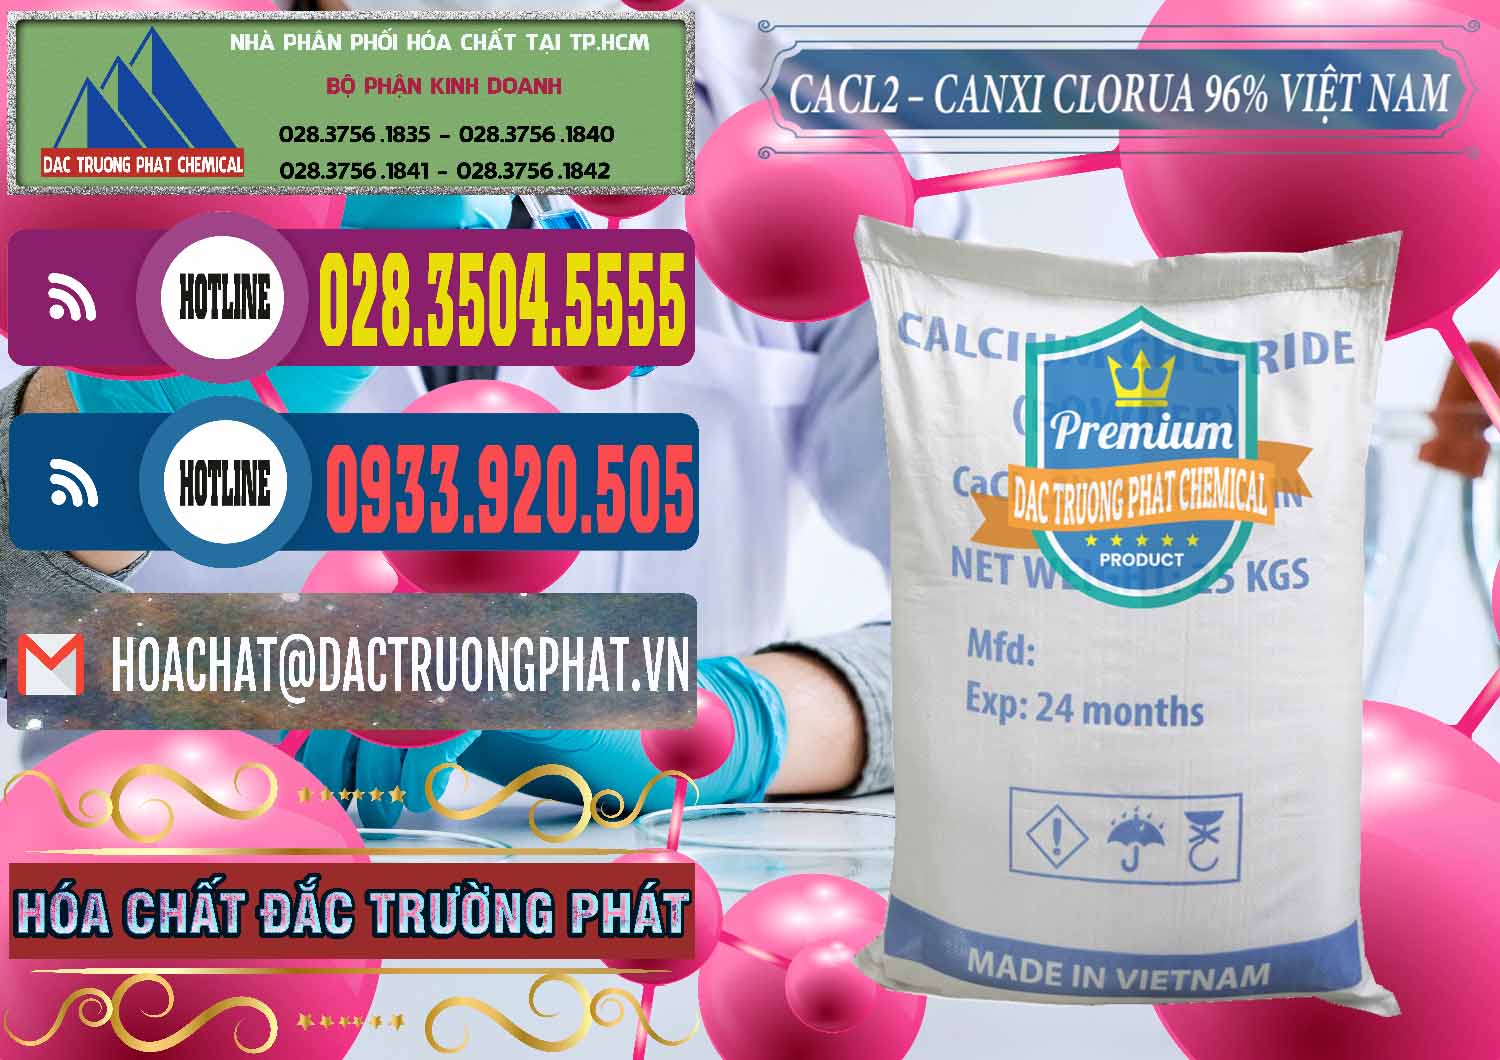 Phân phối và kinh doanh CaCl2 – Canxi Clorua 96% Việt Nam - 0236 - Đơn vị cung cấp _ phân phối hóa chất tại TP.HCM - muabanhoachat.com.vn